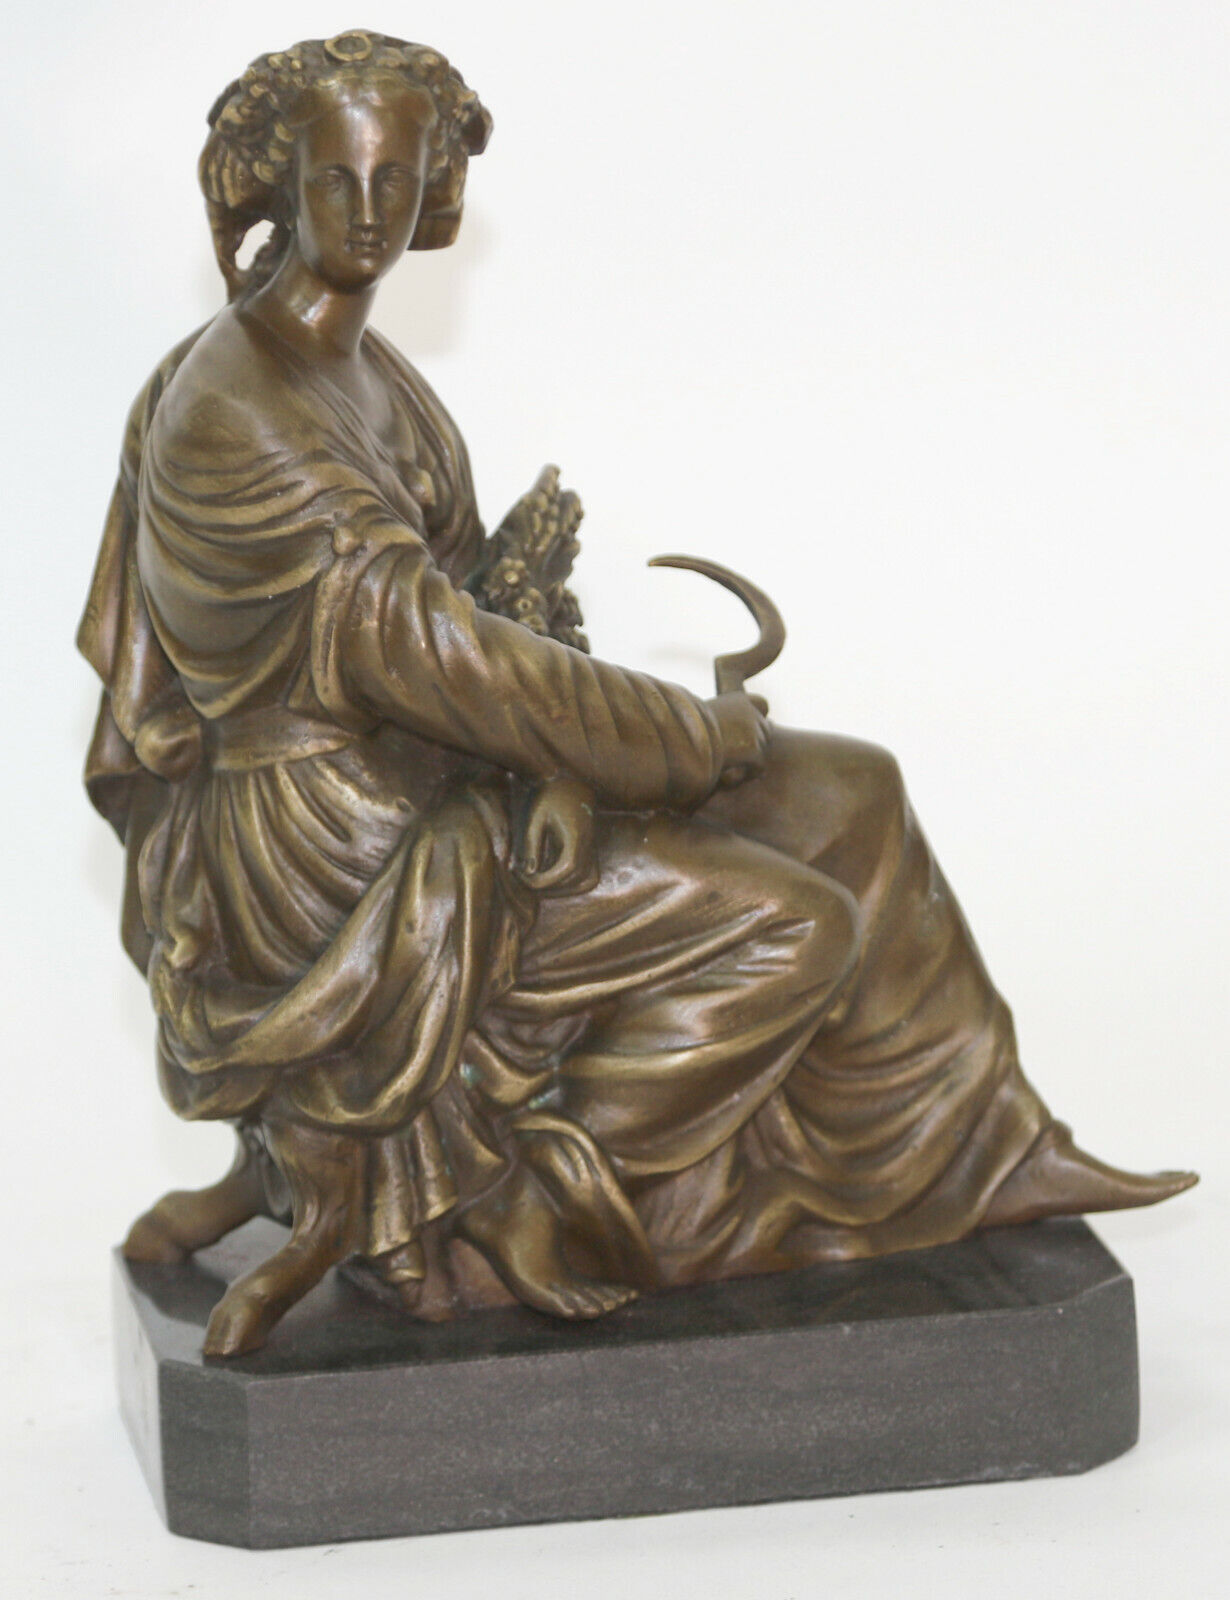 Art Deco/Nouveau Hot Cast Farmer Lady Woman Genuine Bronze Sculpture Statue DEAL